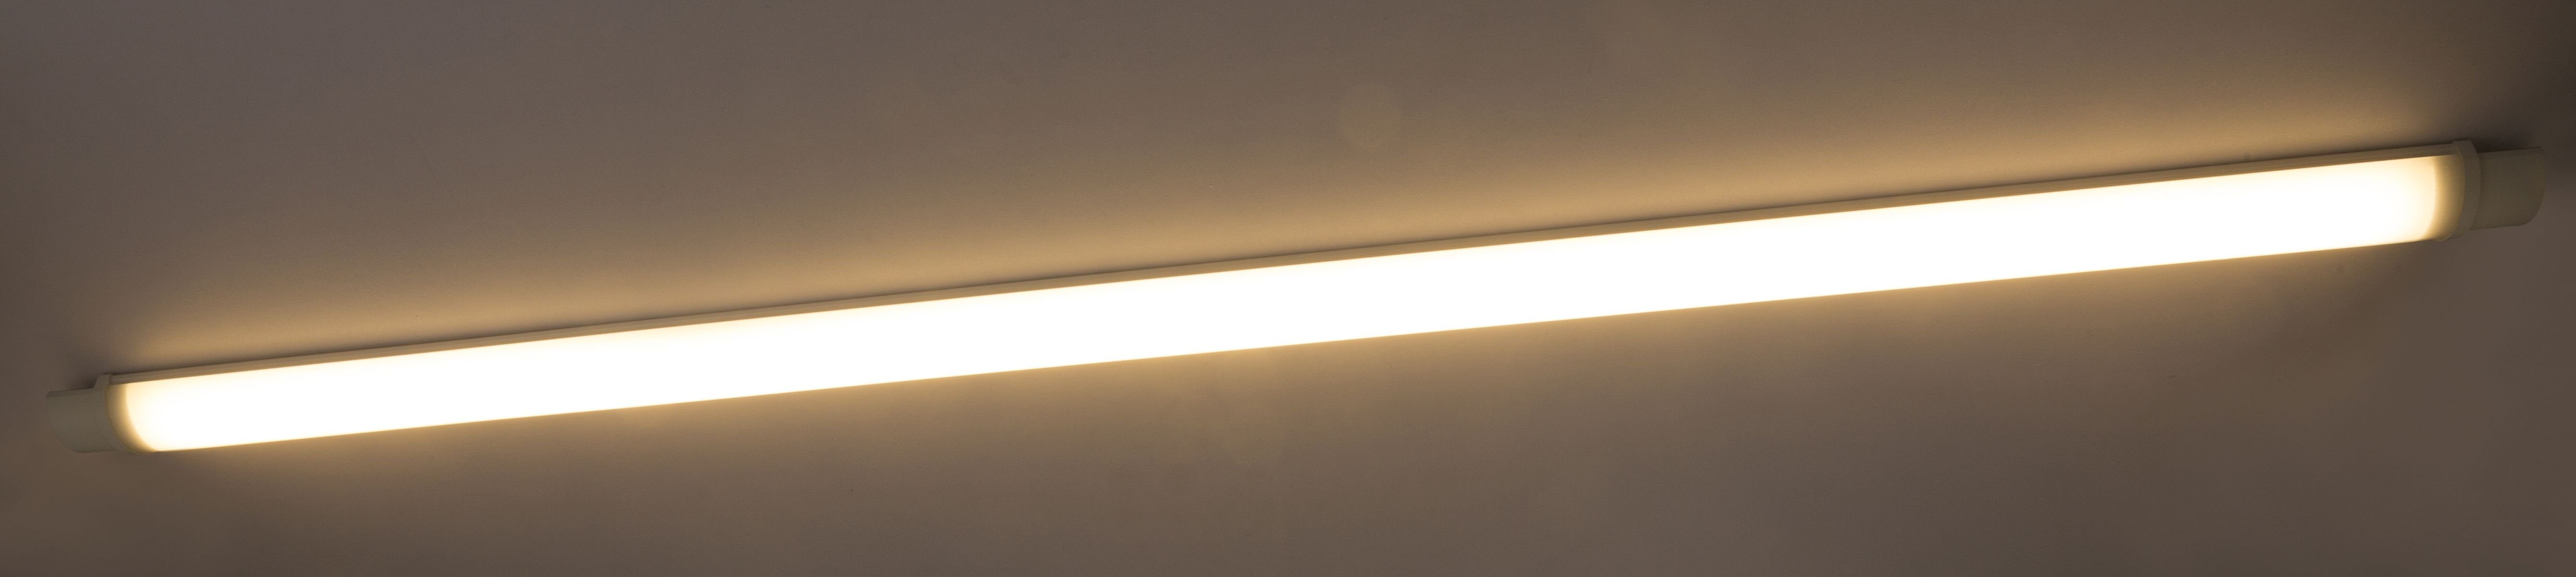 Küche Deckenleuchte LED warmweiß Unterbaulampe Unterbauleuchte GLOBO außen Globo